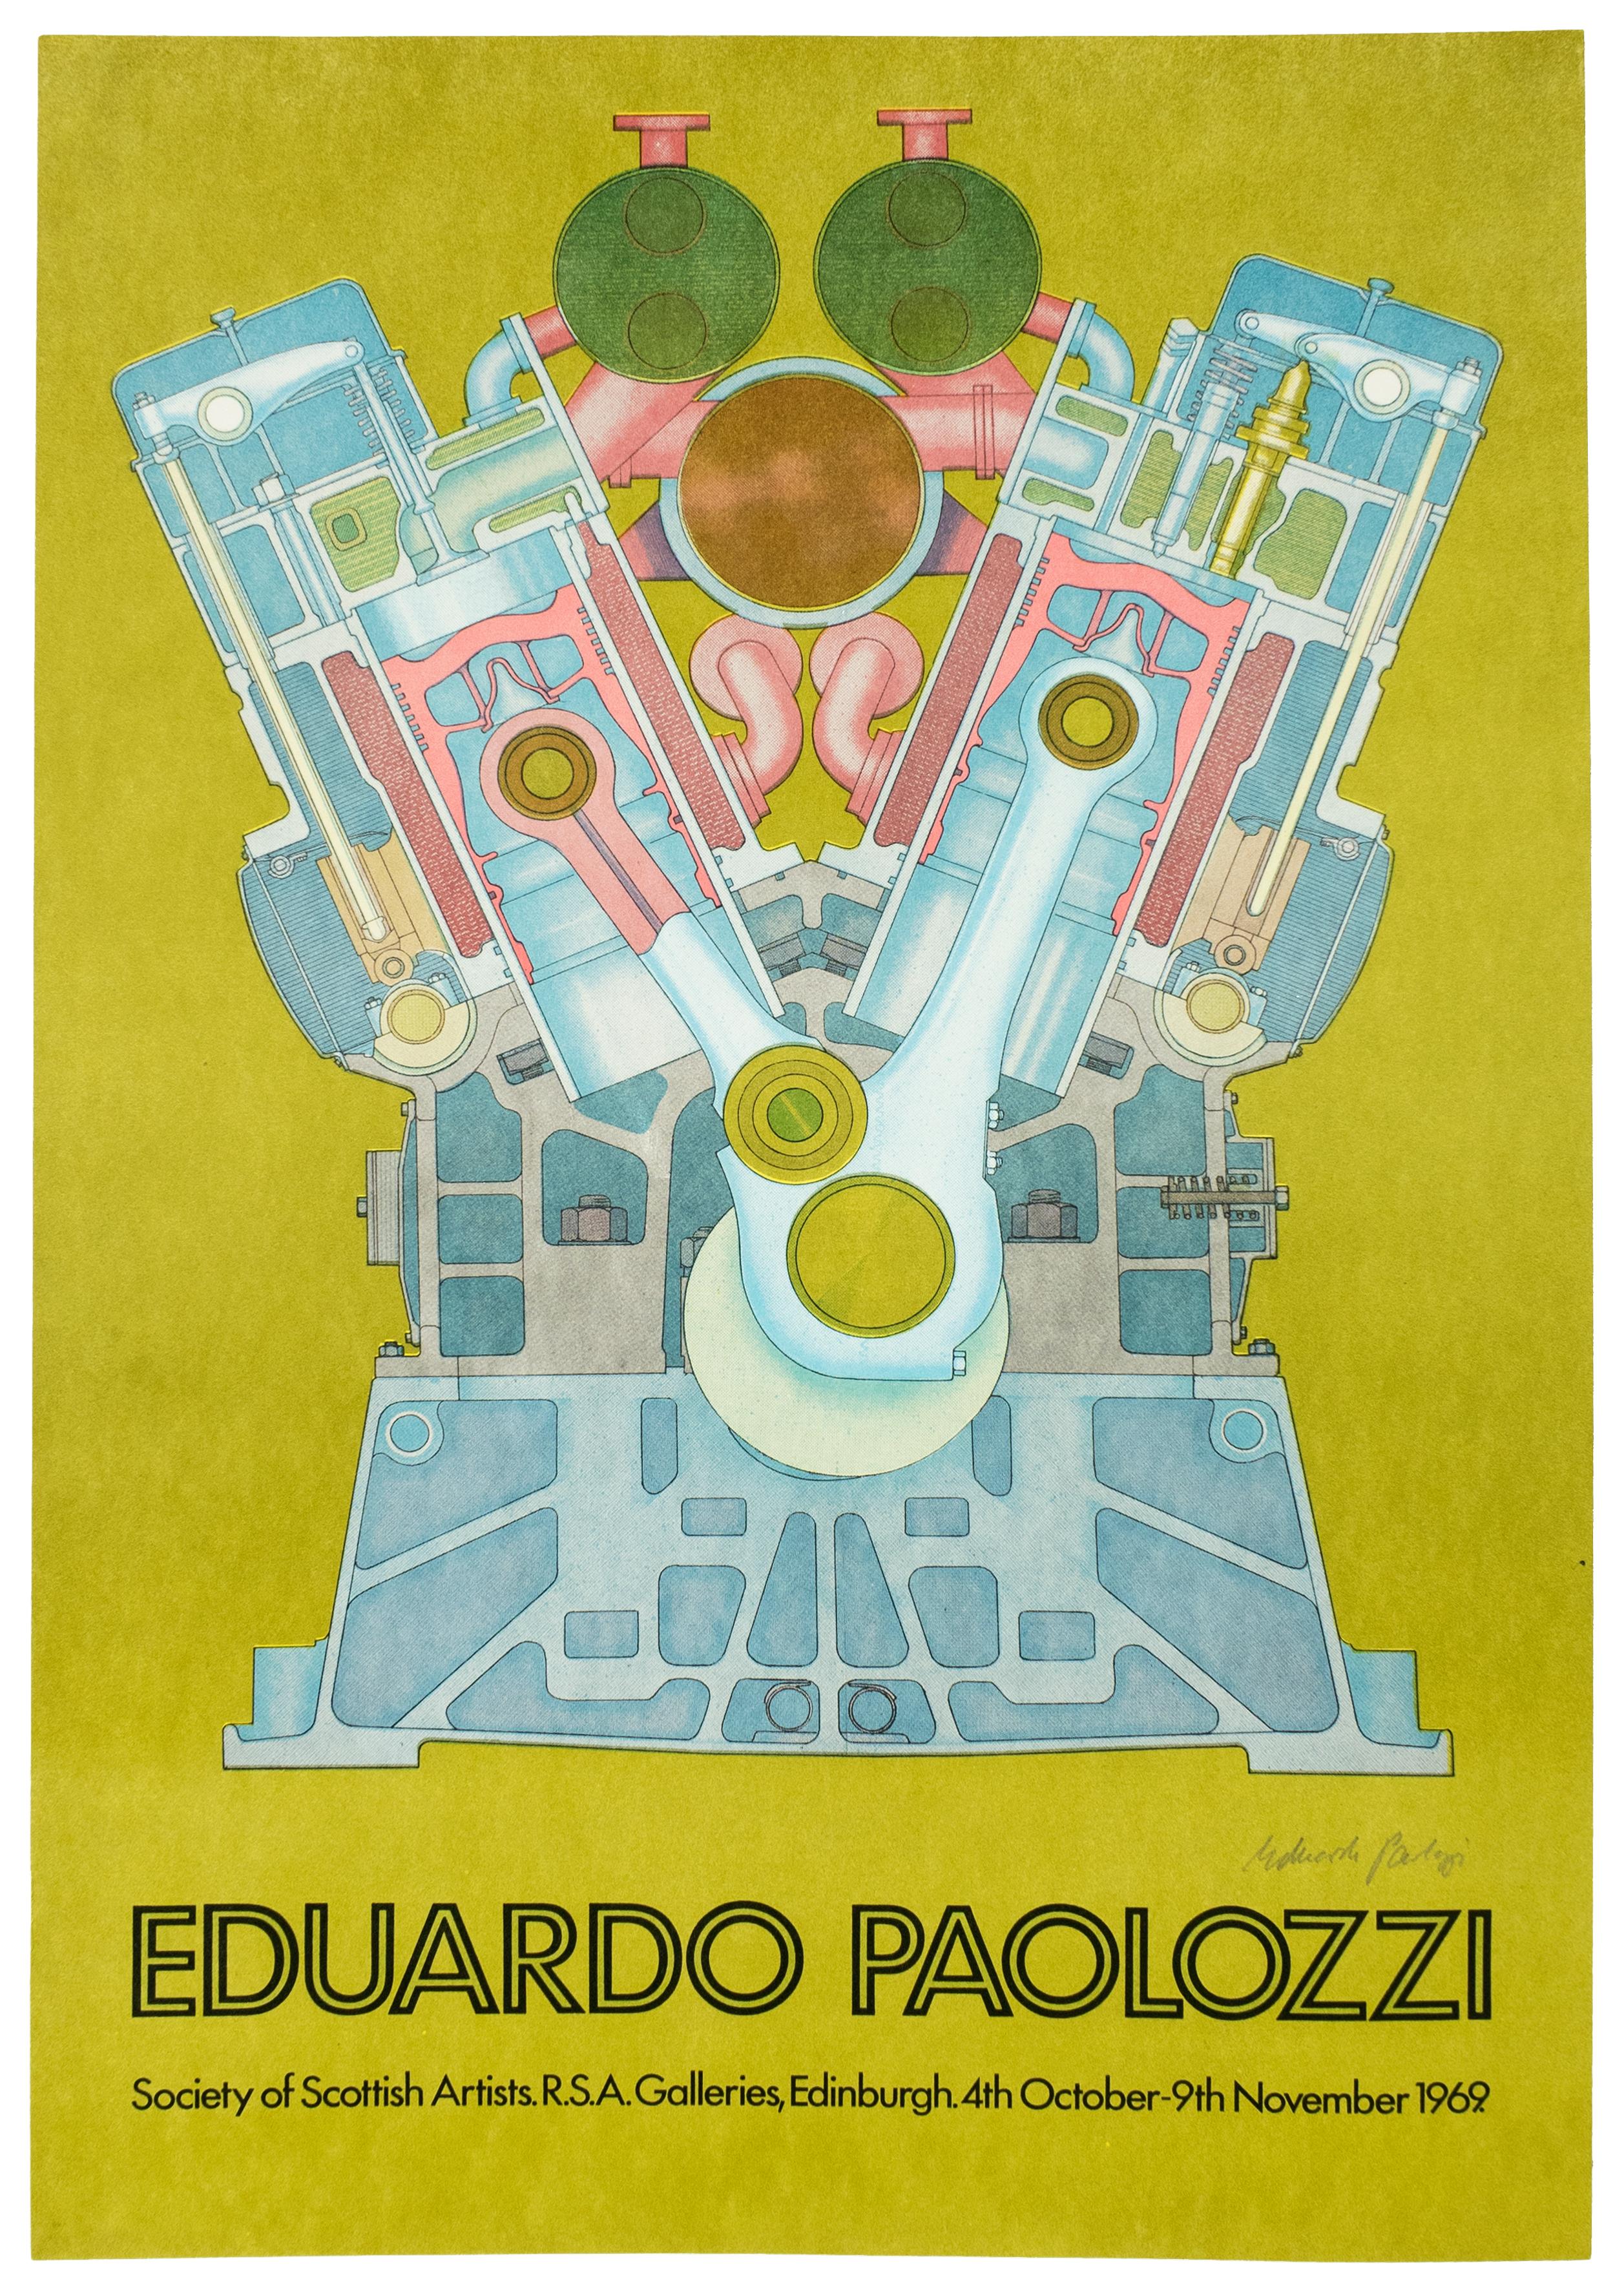 Ein lebhaftes Vintage-Poster in Blau, Rosa, Braun und klassischem Avocadogrün aus den 1960er Jahren vom schottischen Pop-Art-Vordenker Eduardo Paolozzi. Die Maschine ragt in zwei Armen in die Höhe wie ein Automotor aus der Raumfahrt. Verwischte